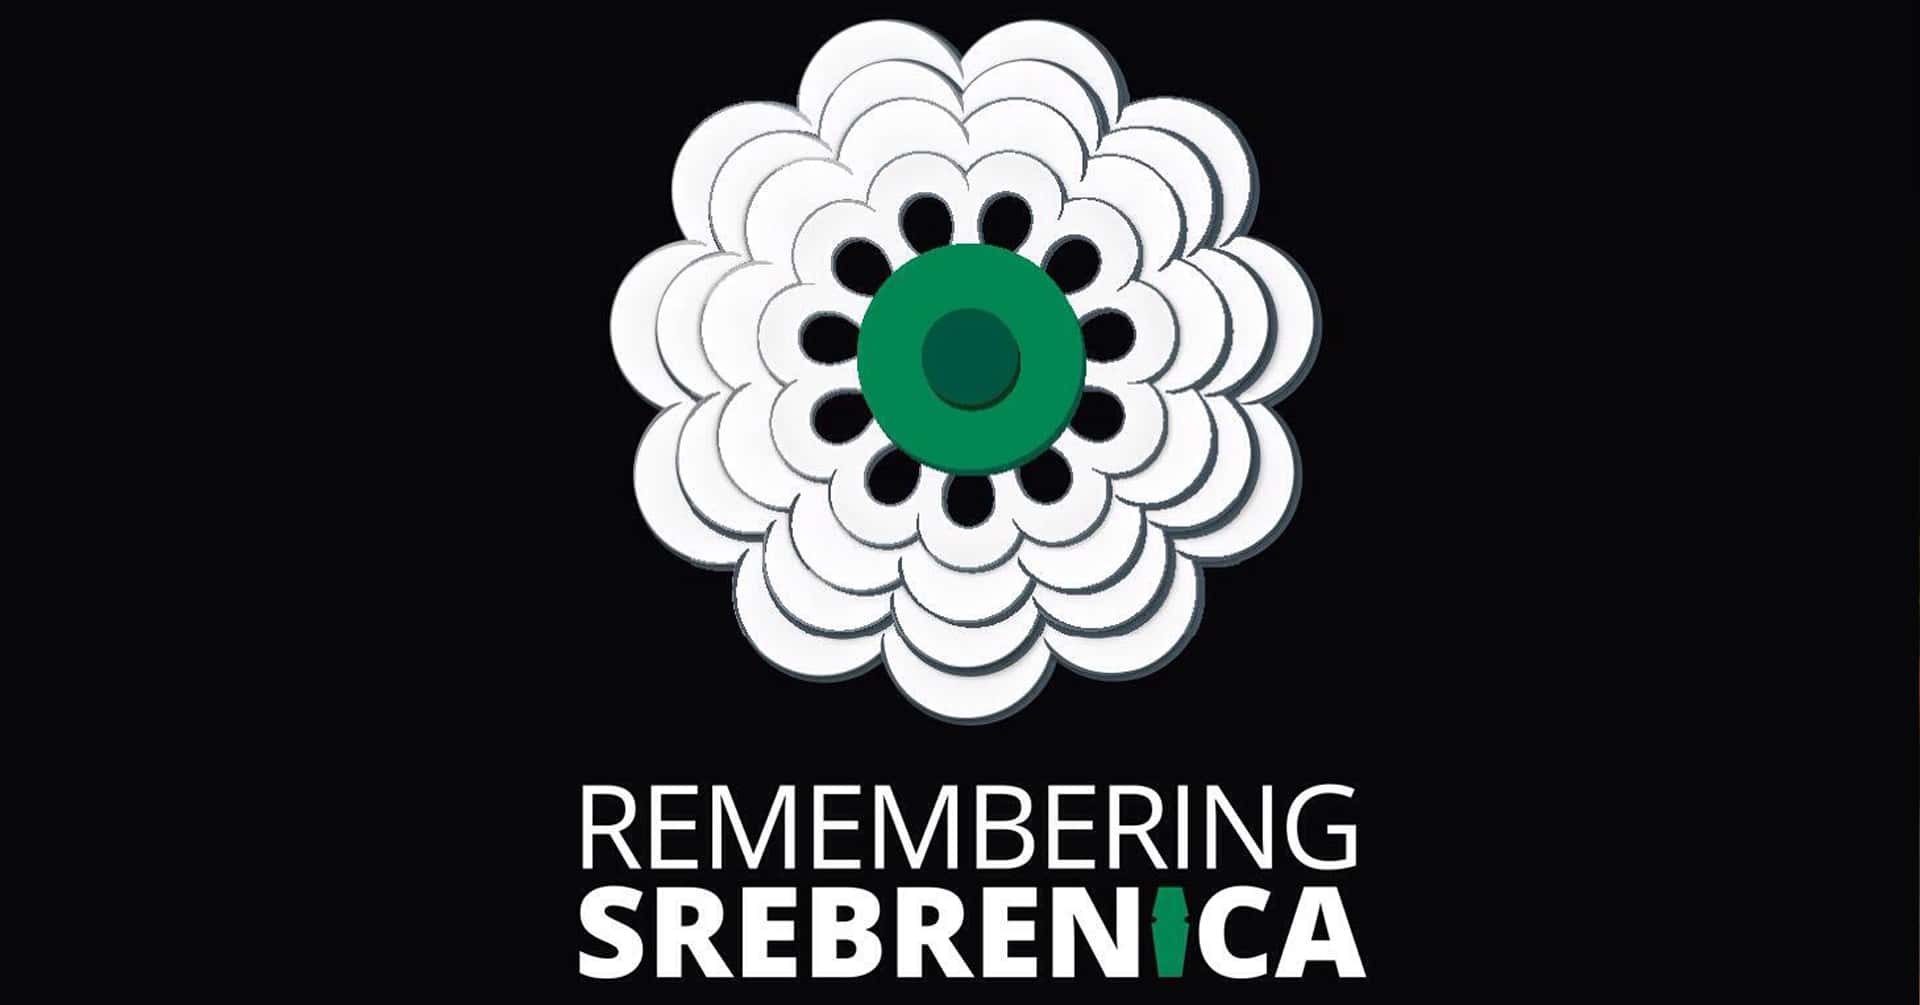 Un monumento per ricordare Srebrenica